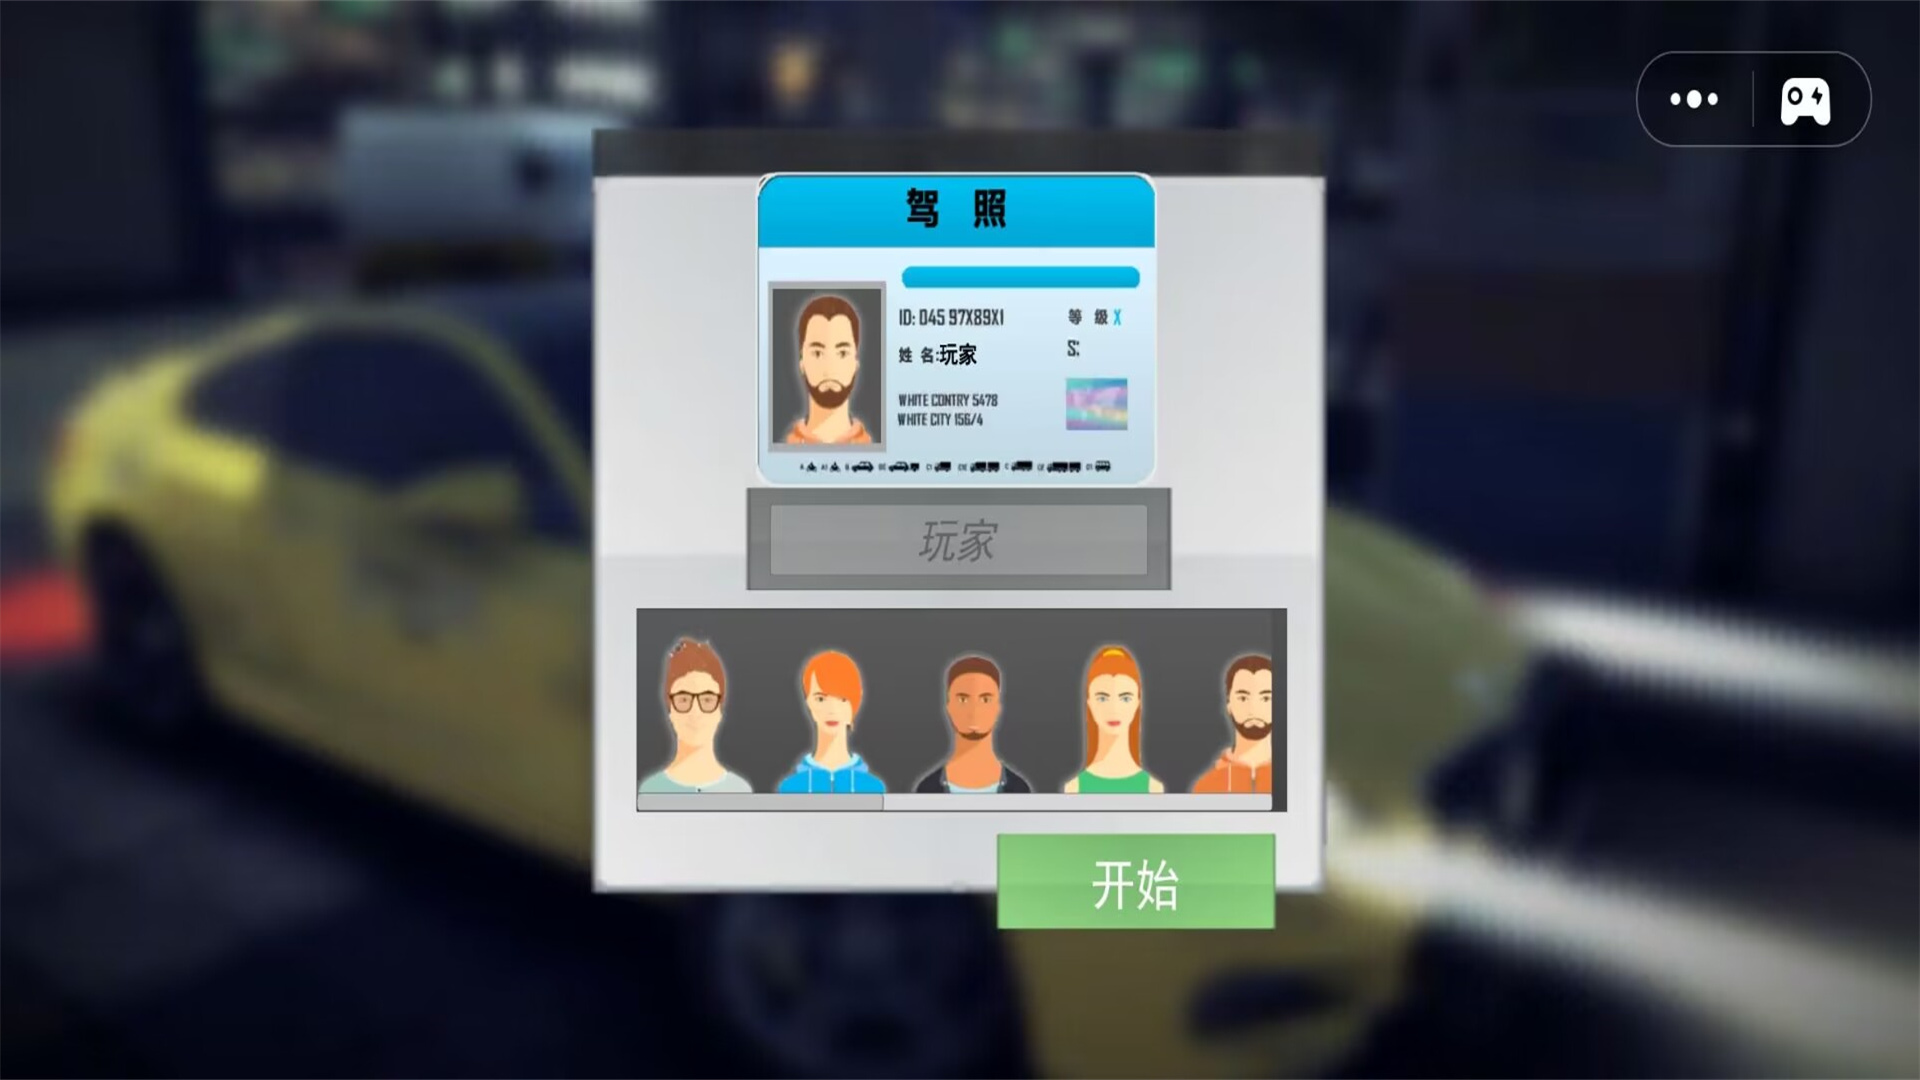 出租车司机模拟游戏第1张截图